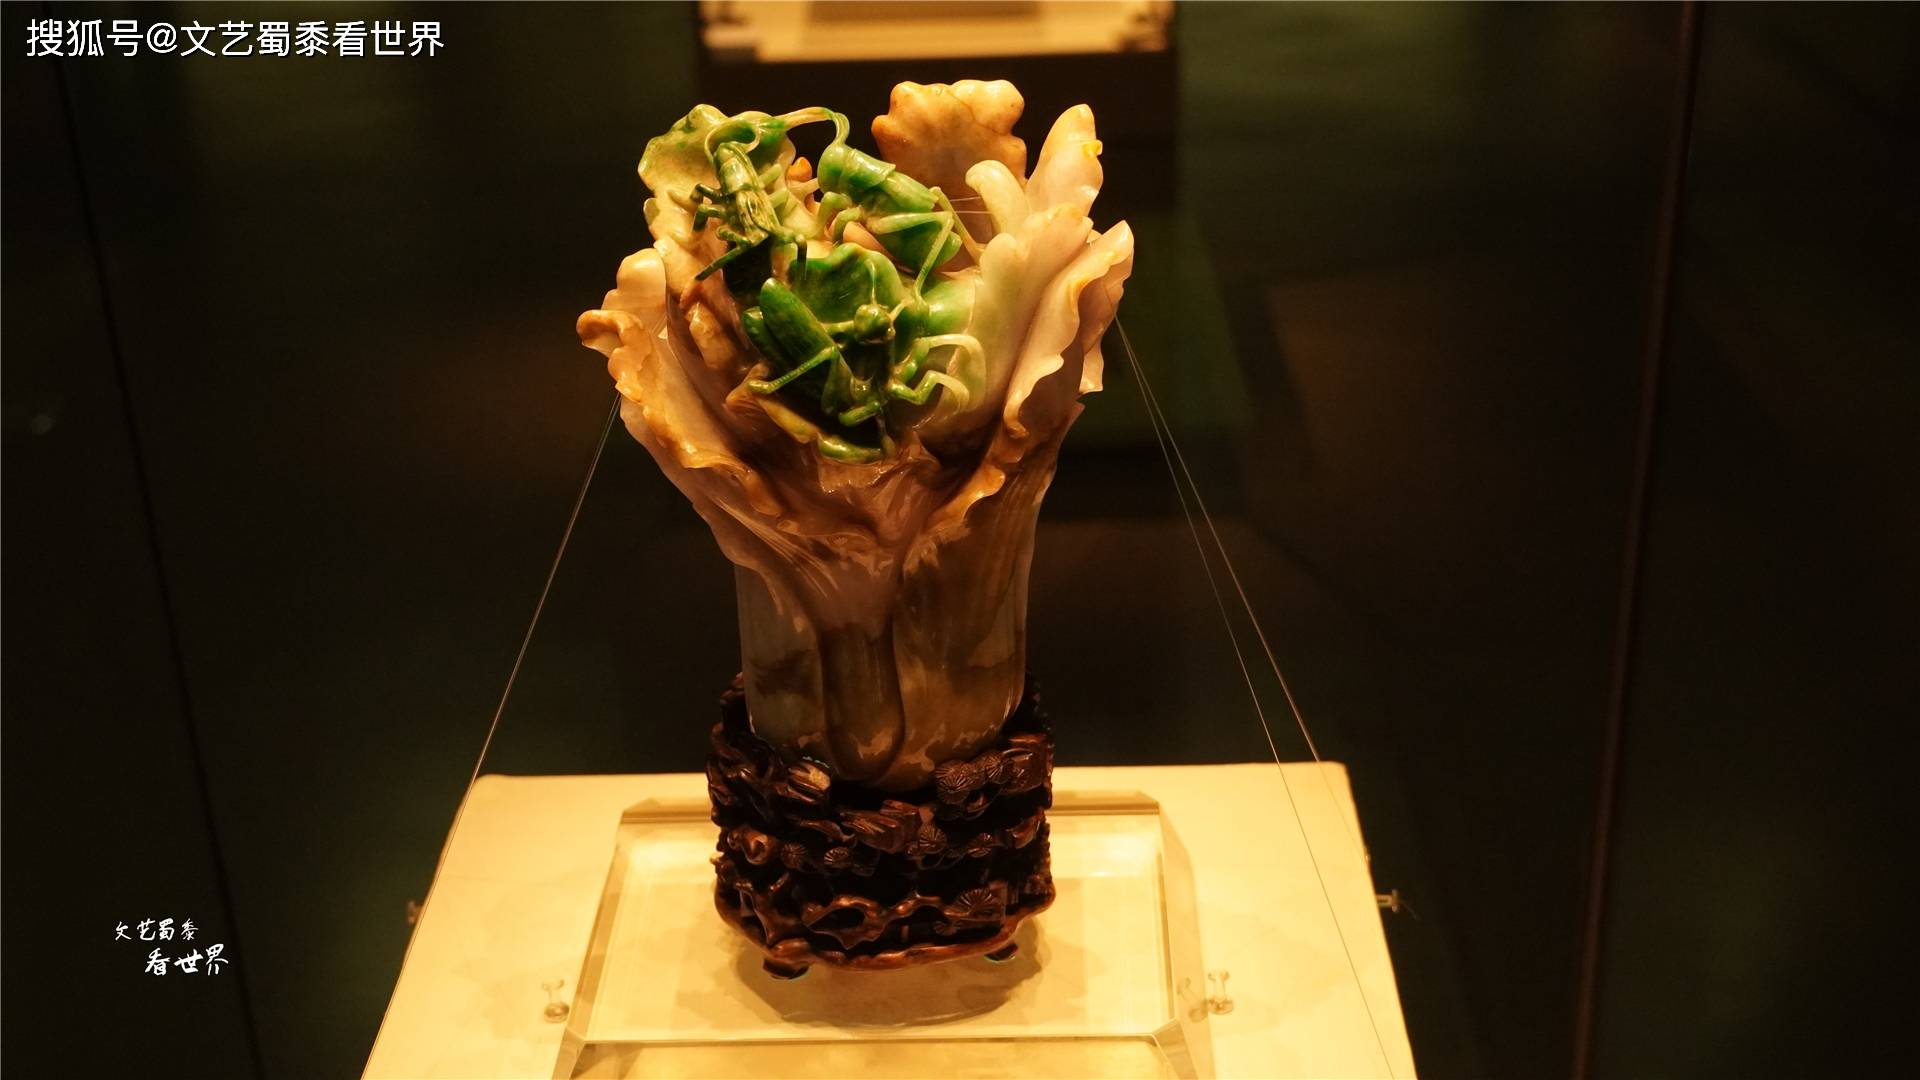 台北故宫翡翠白菜值1000亿美元?天津博物馆的冻白菜毫不逊色